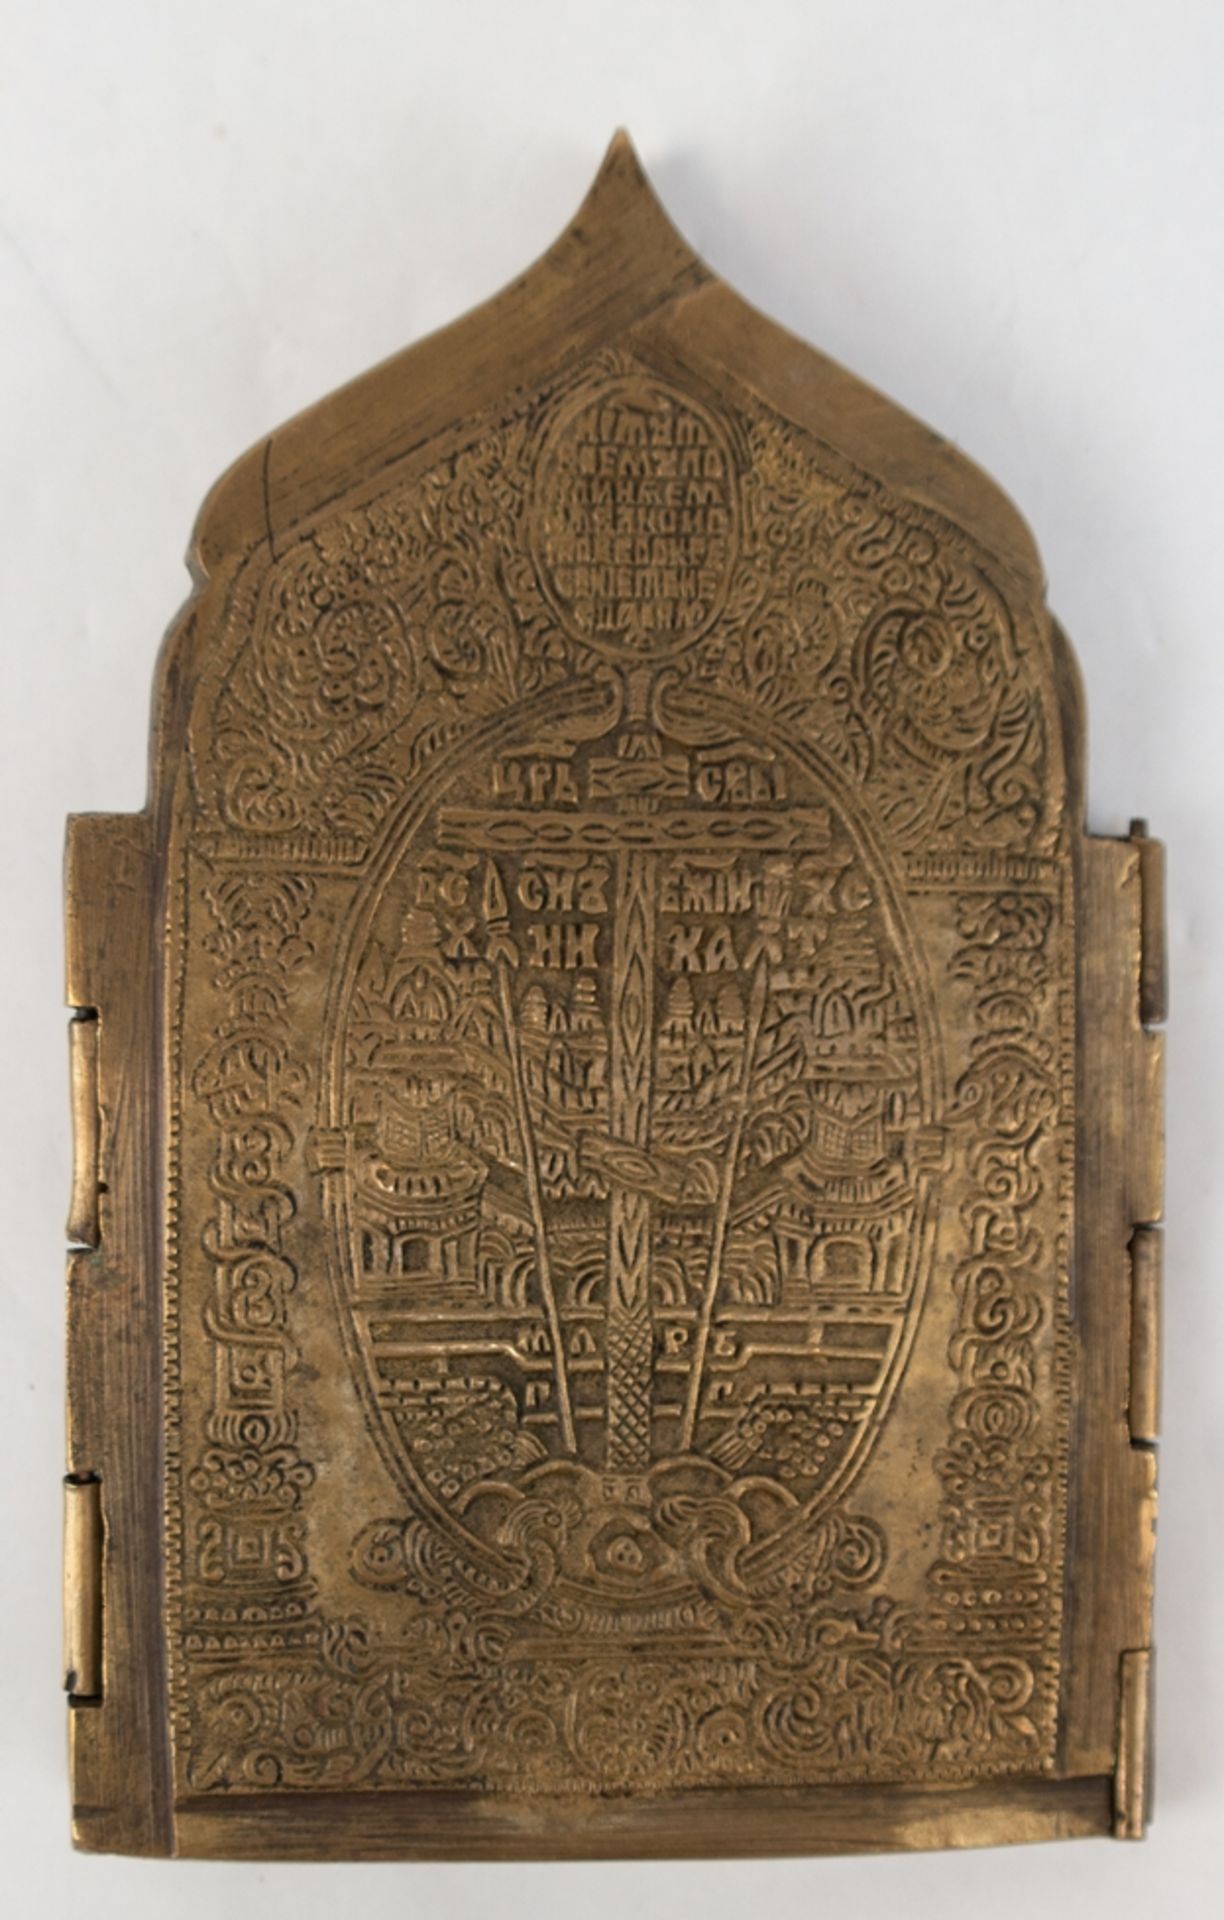 Reiseikone, Bronze z.T. emailliert, 19. Jh., Tetraptychon, 4-flügelig, klappbar, ges. 17x40,5 cm - Image 2 of 2